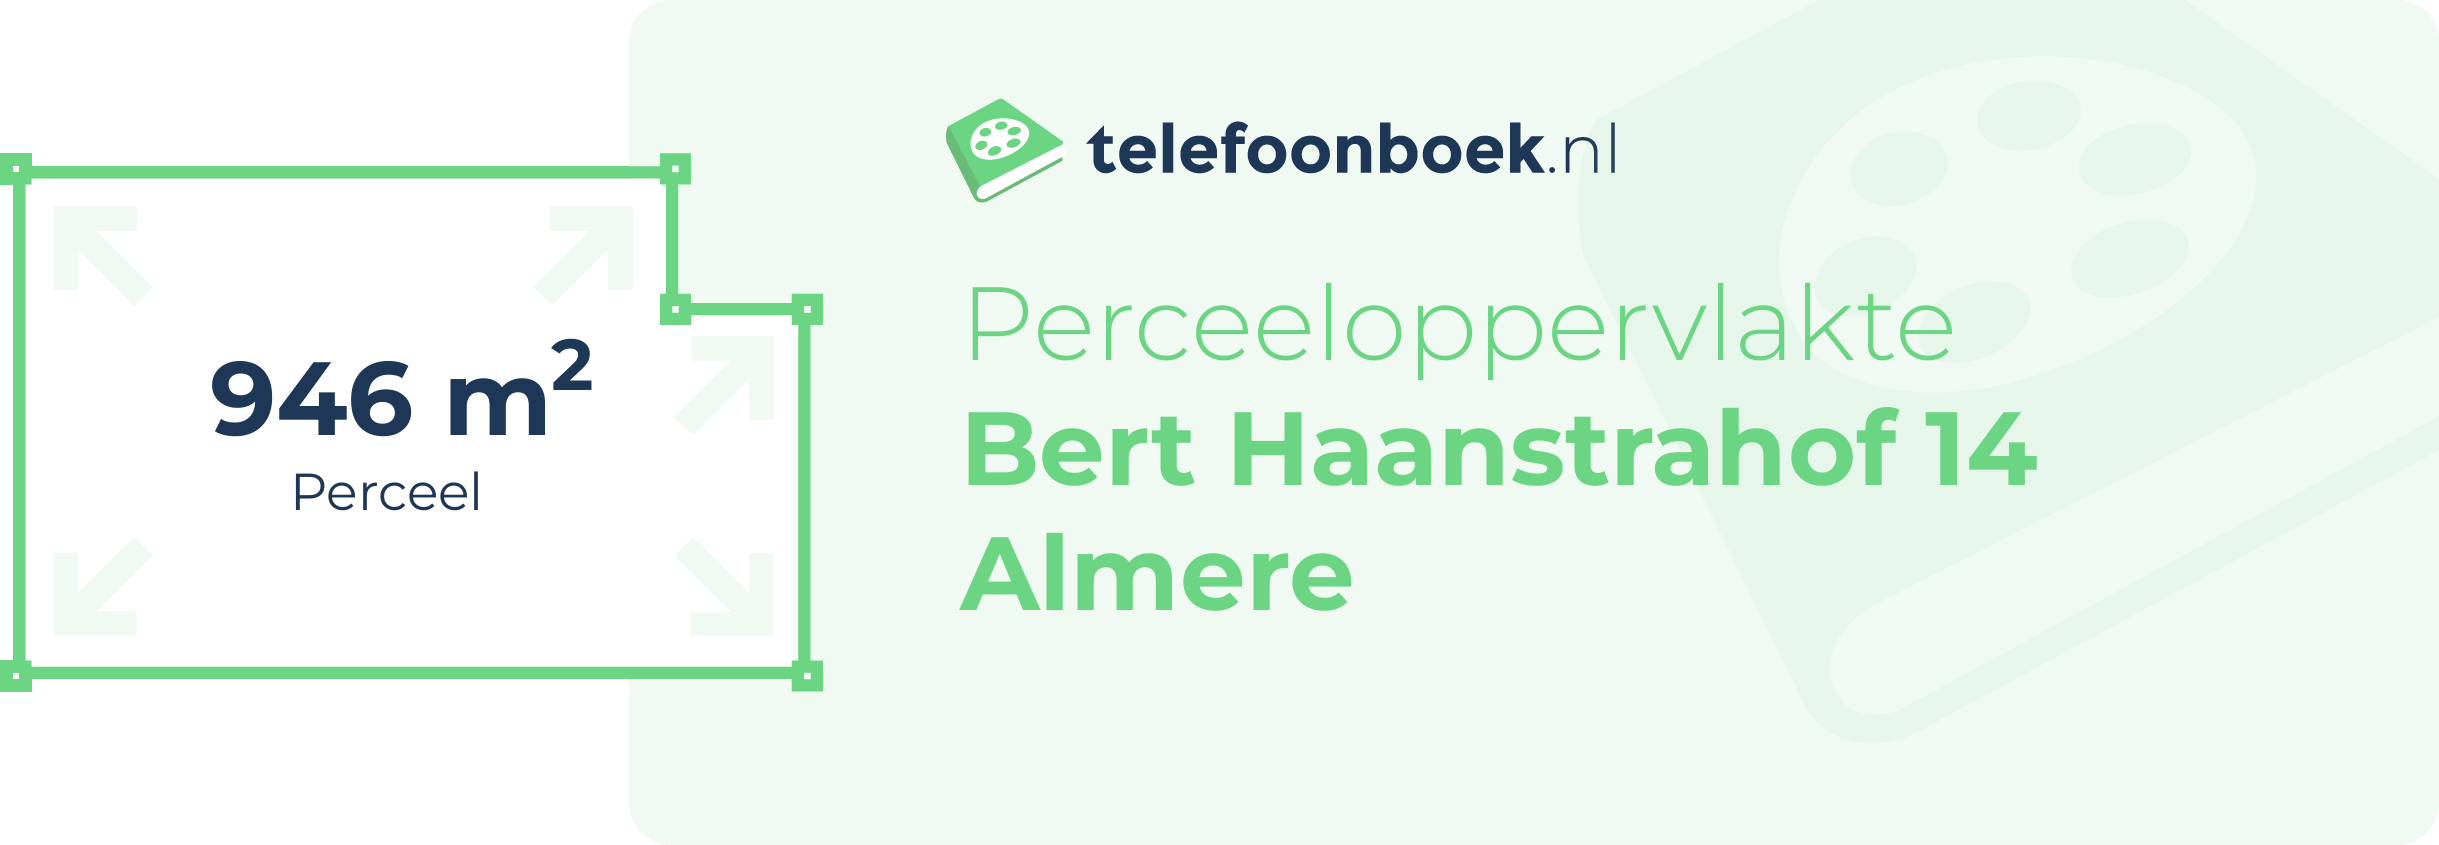 Perceeloppervlakte Bert Haanstrahof 14 Almere